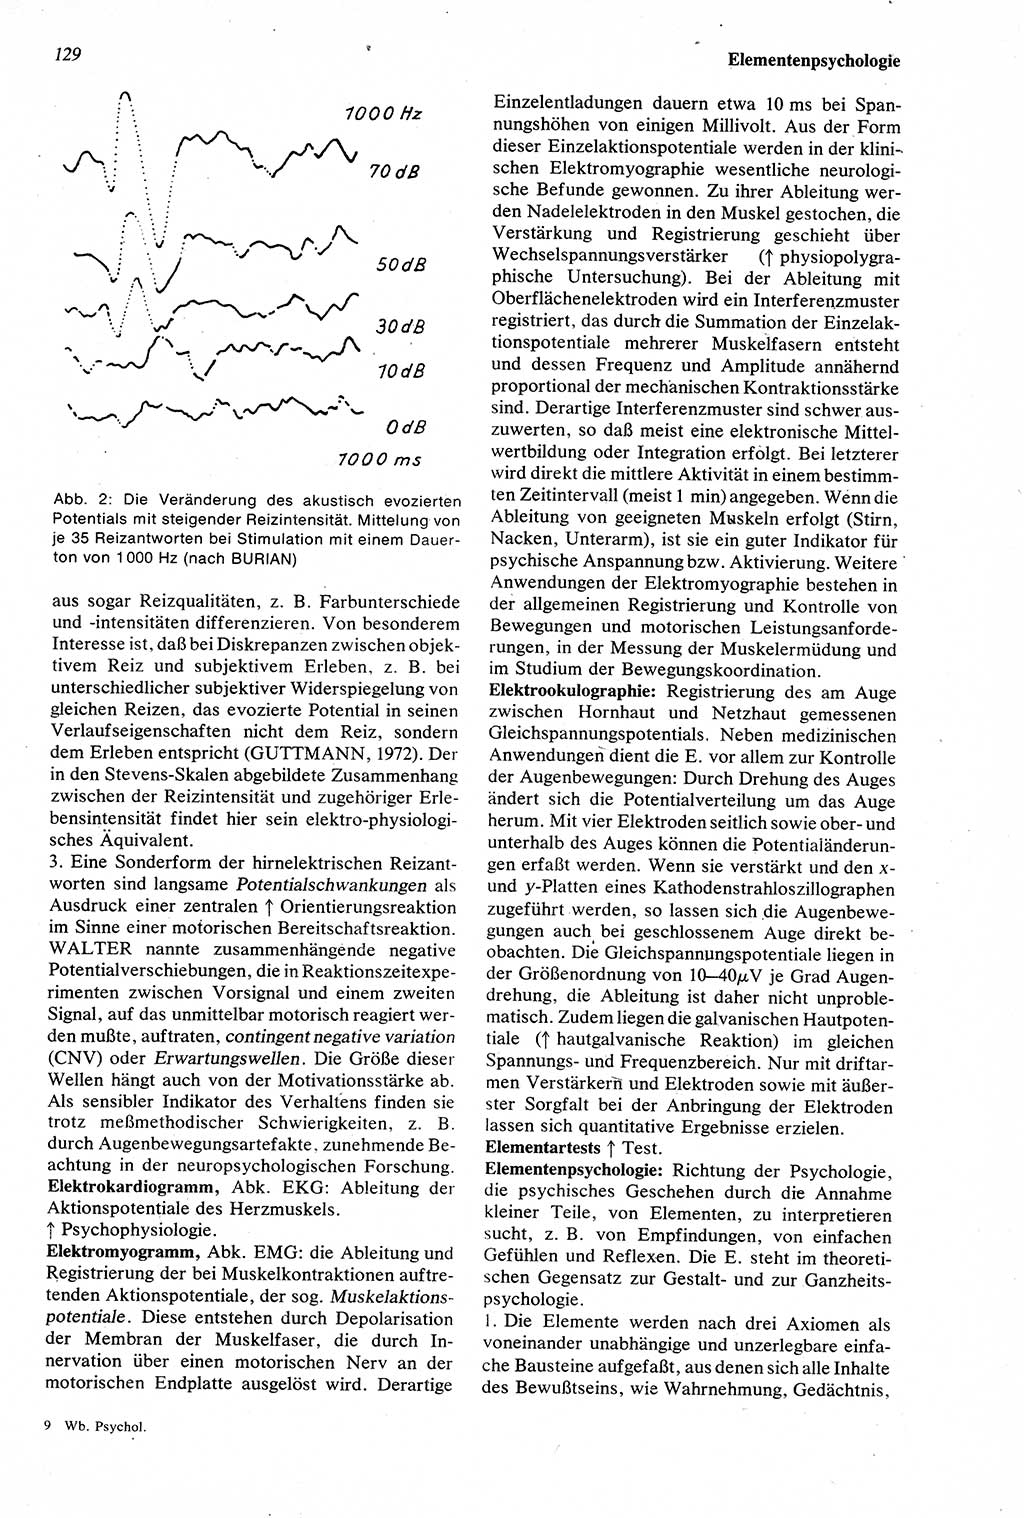 Wörterbuch der Psychologie [Deutsche Demokratische Republik (DDR)] 1976, Seite 129 (Wb. Psych. DDR 1976, S. 129)